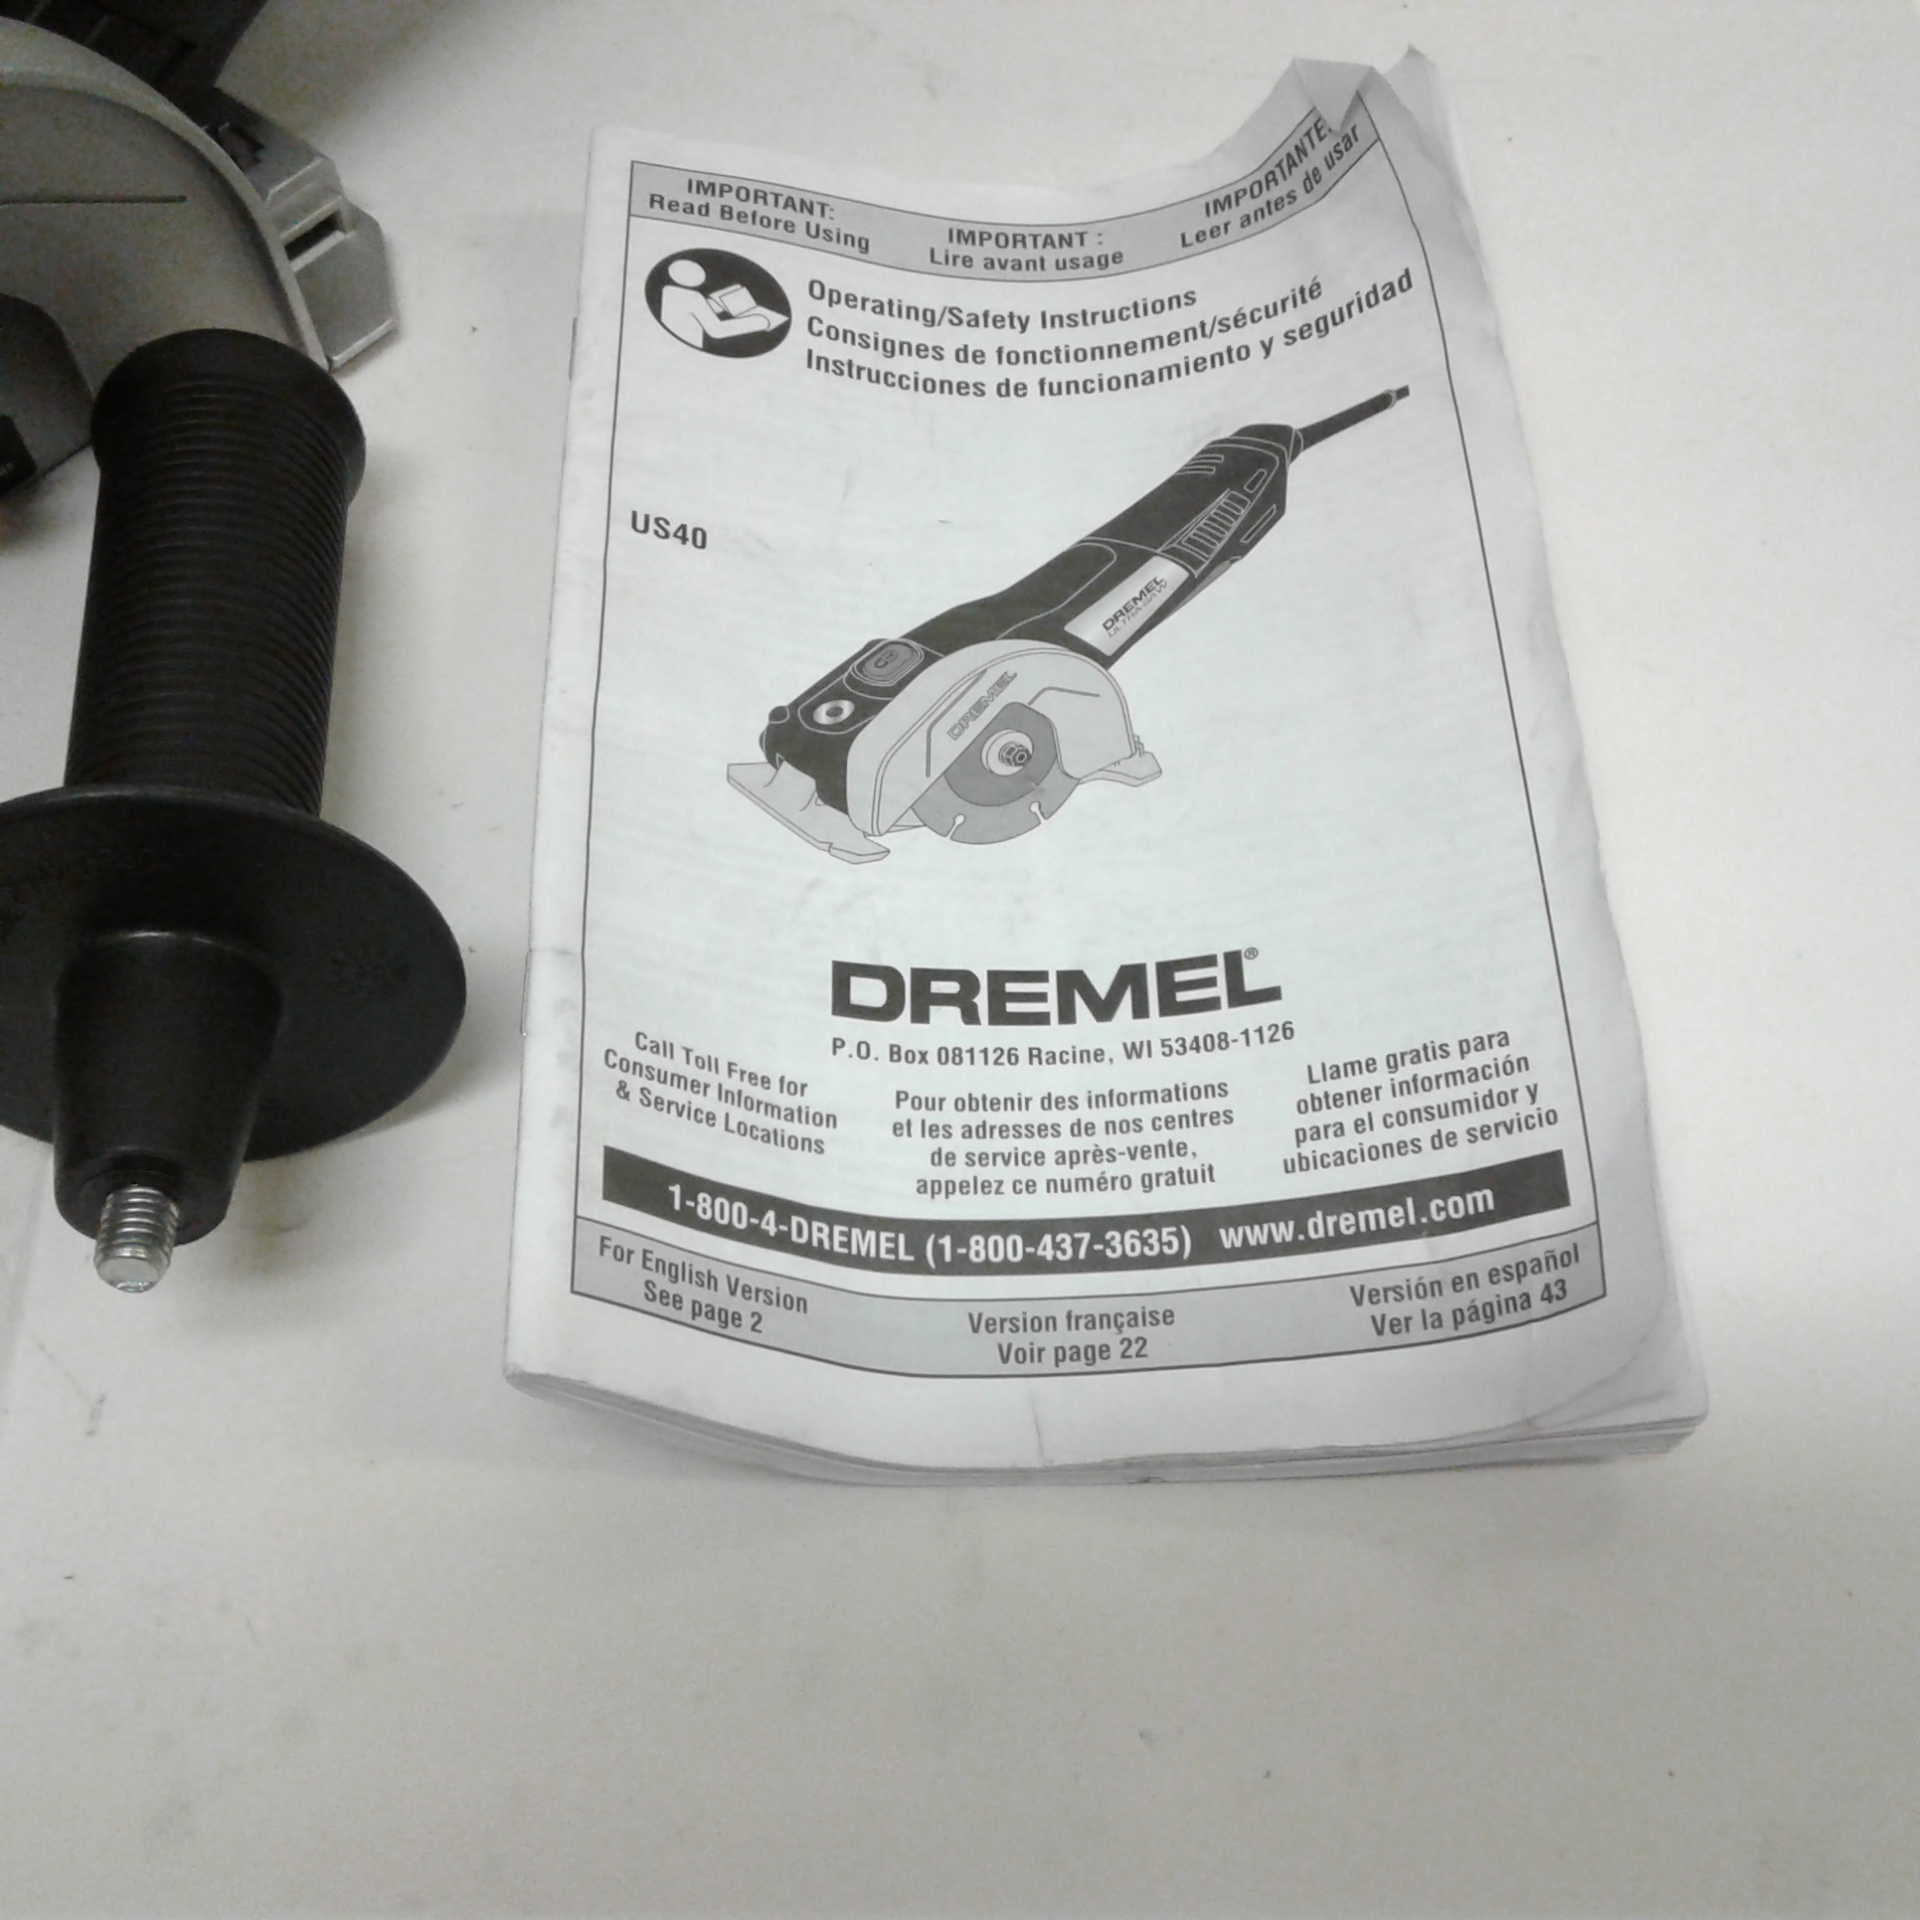 Dremel US40 Ultra-Saw 7.5 amp Corded 4-inch Circular Saw/Grinder ...